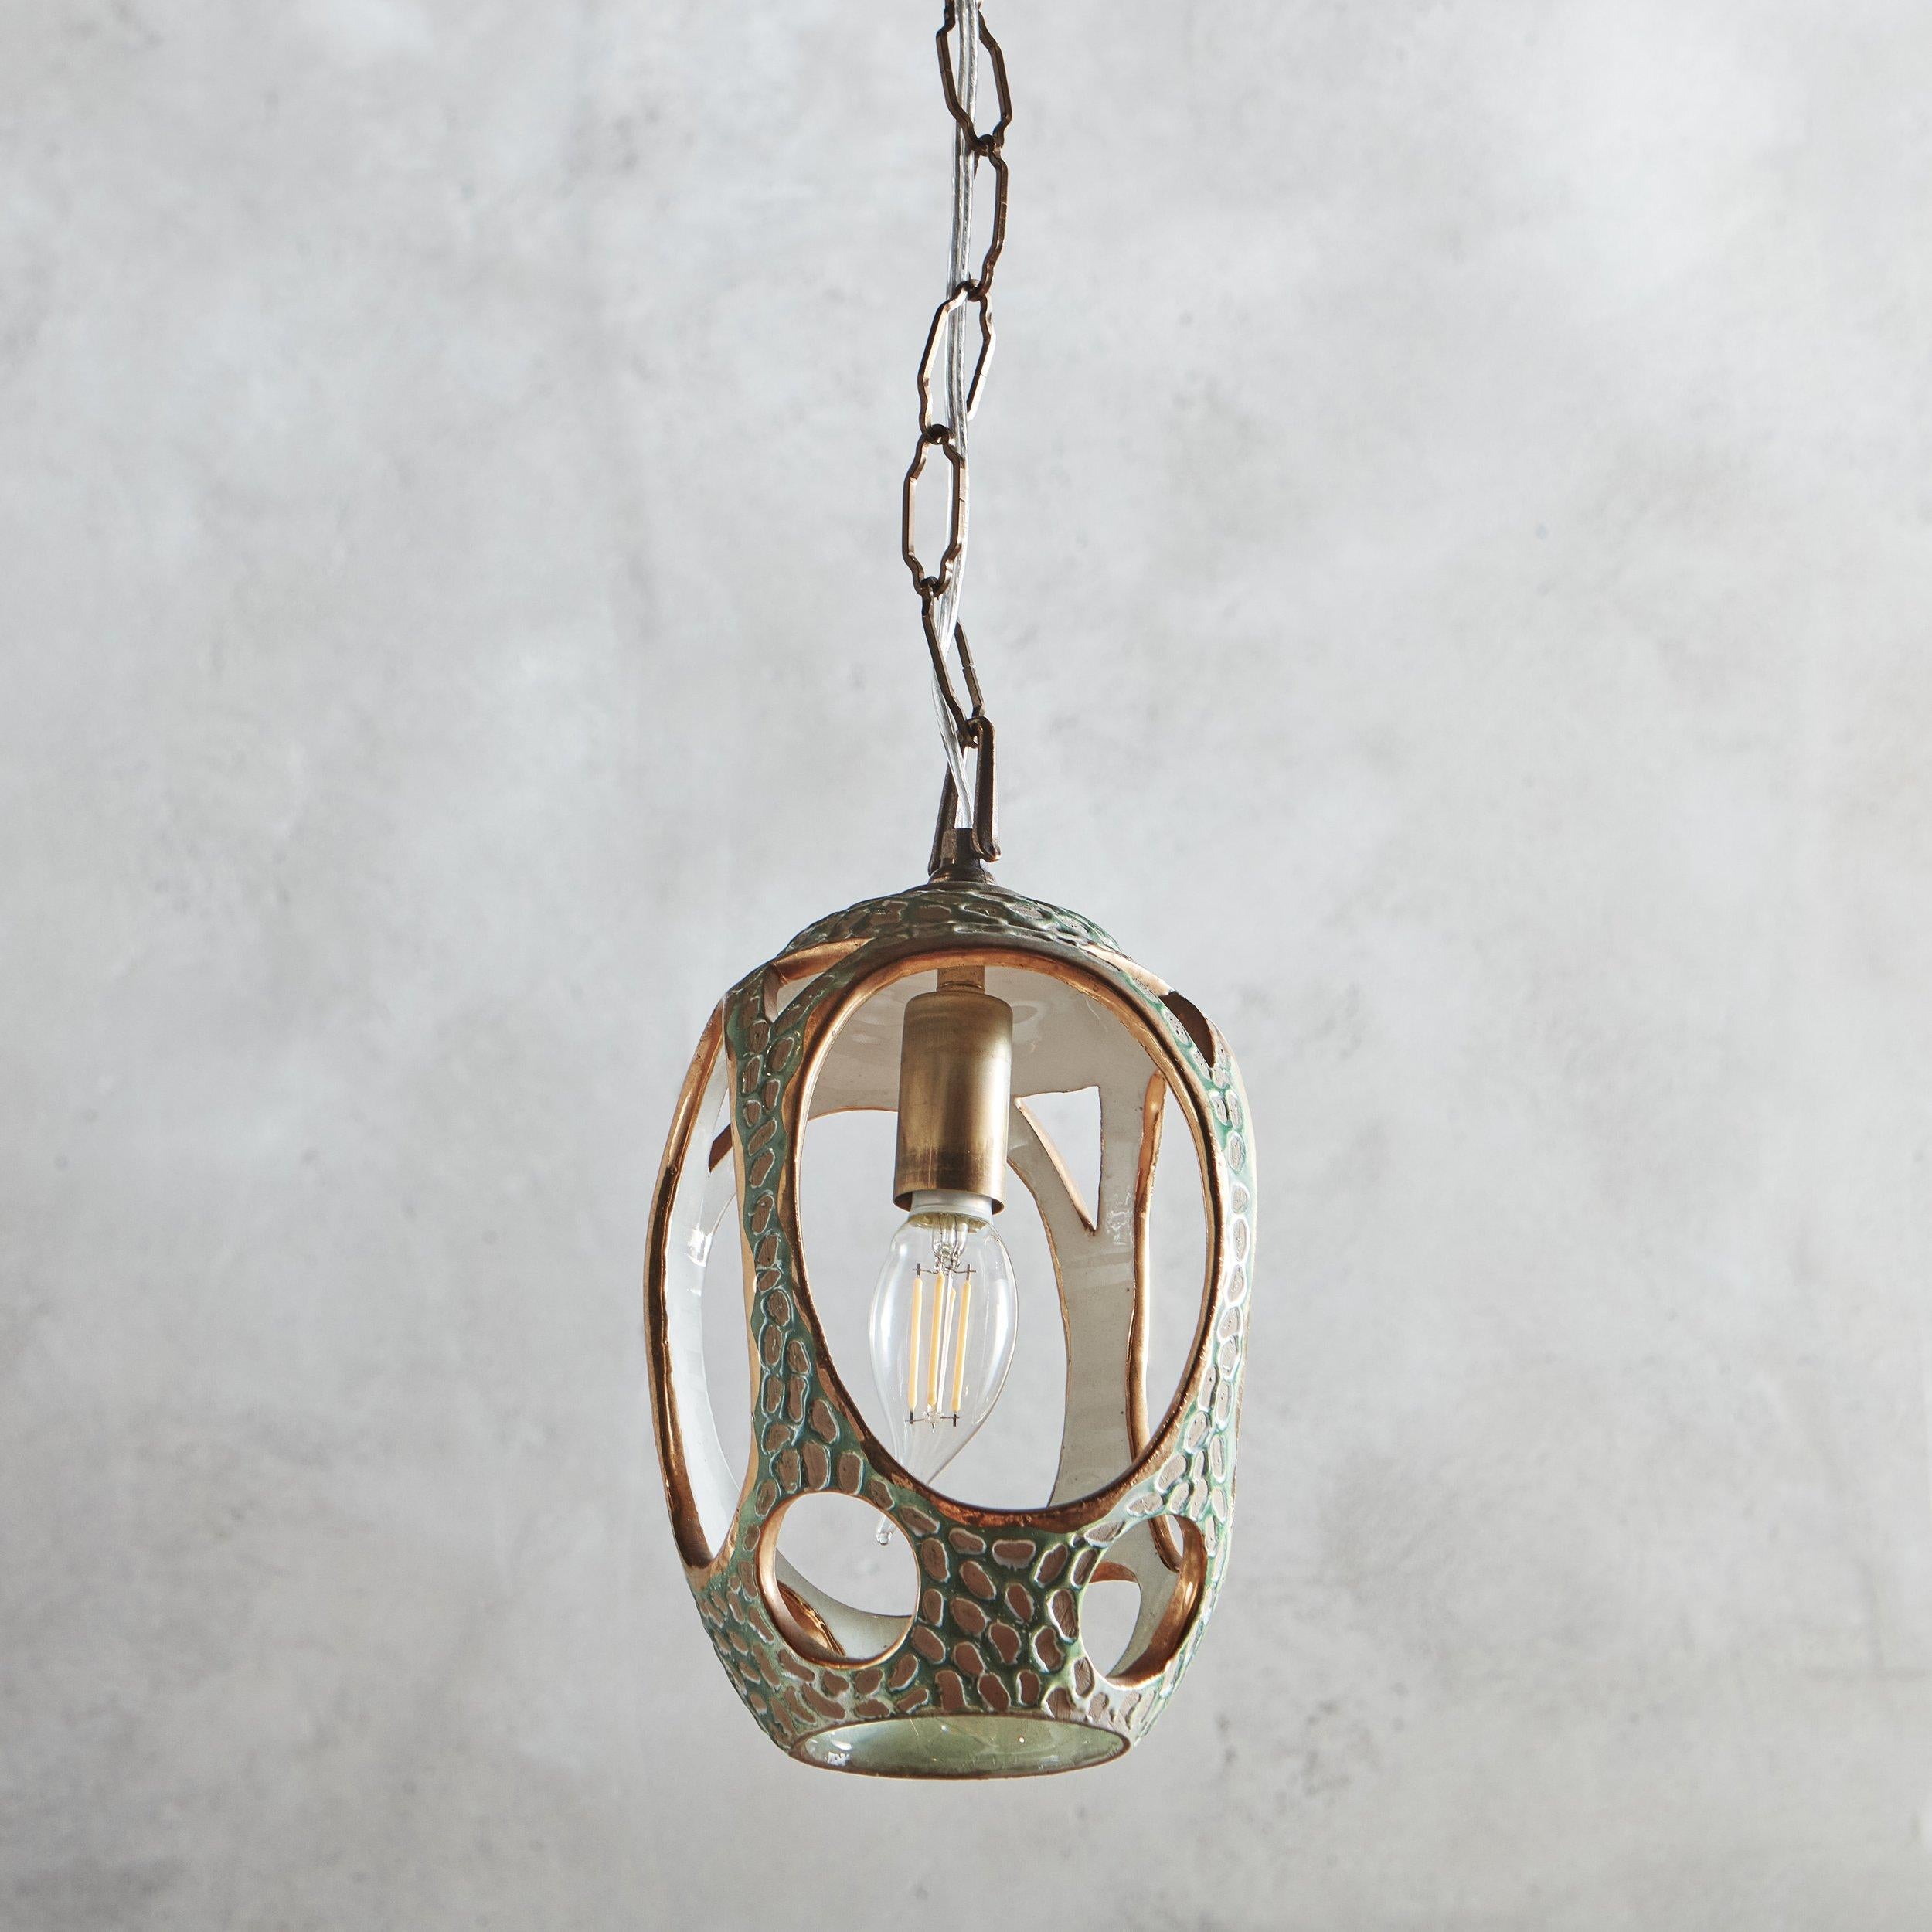 Lampe suspendue en céramique émaillée des années 1950 de la société de poterie danoise Zenith Gouda, avec des détails de découpe ovale et circulaire sur les côtés et la base. Ce luminaire présente des détails dorés et un extérieur texturé dans une